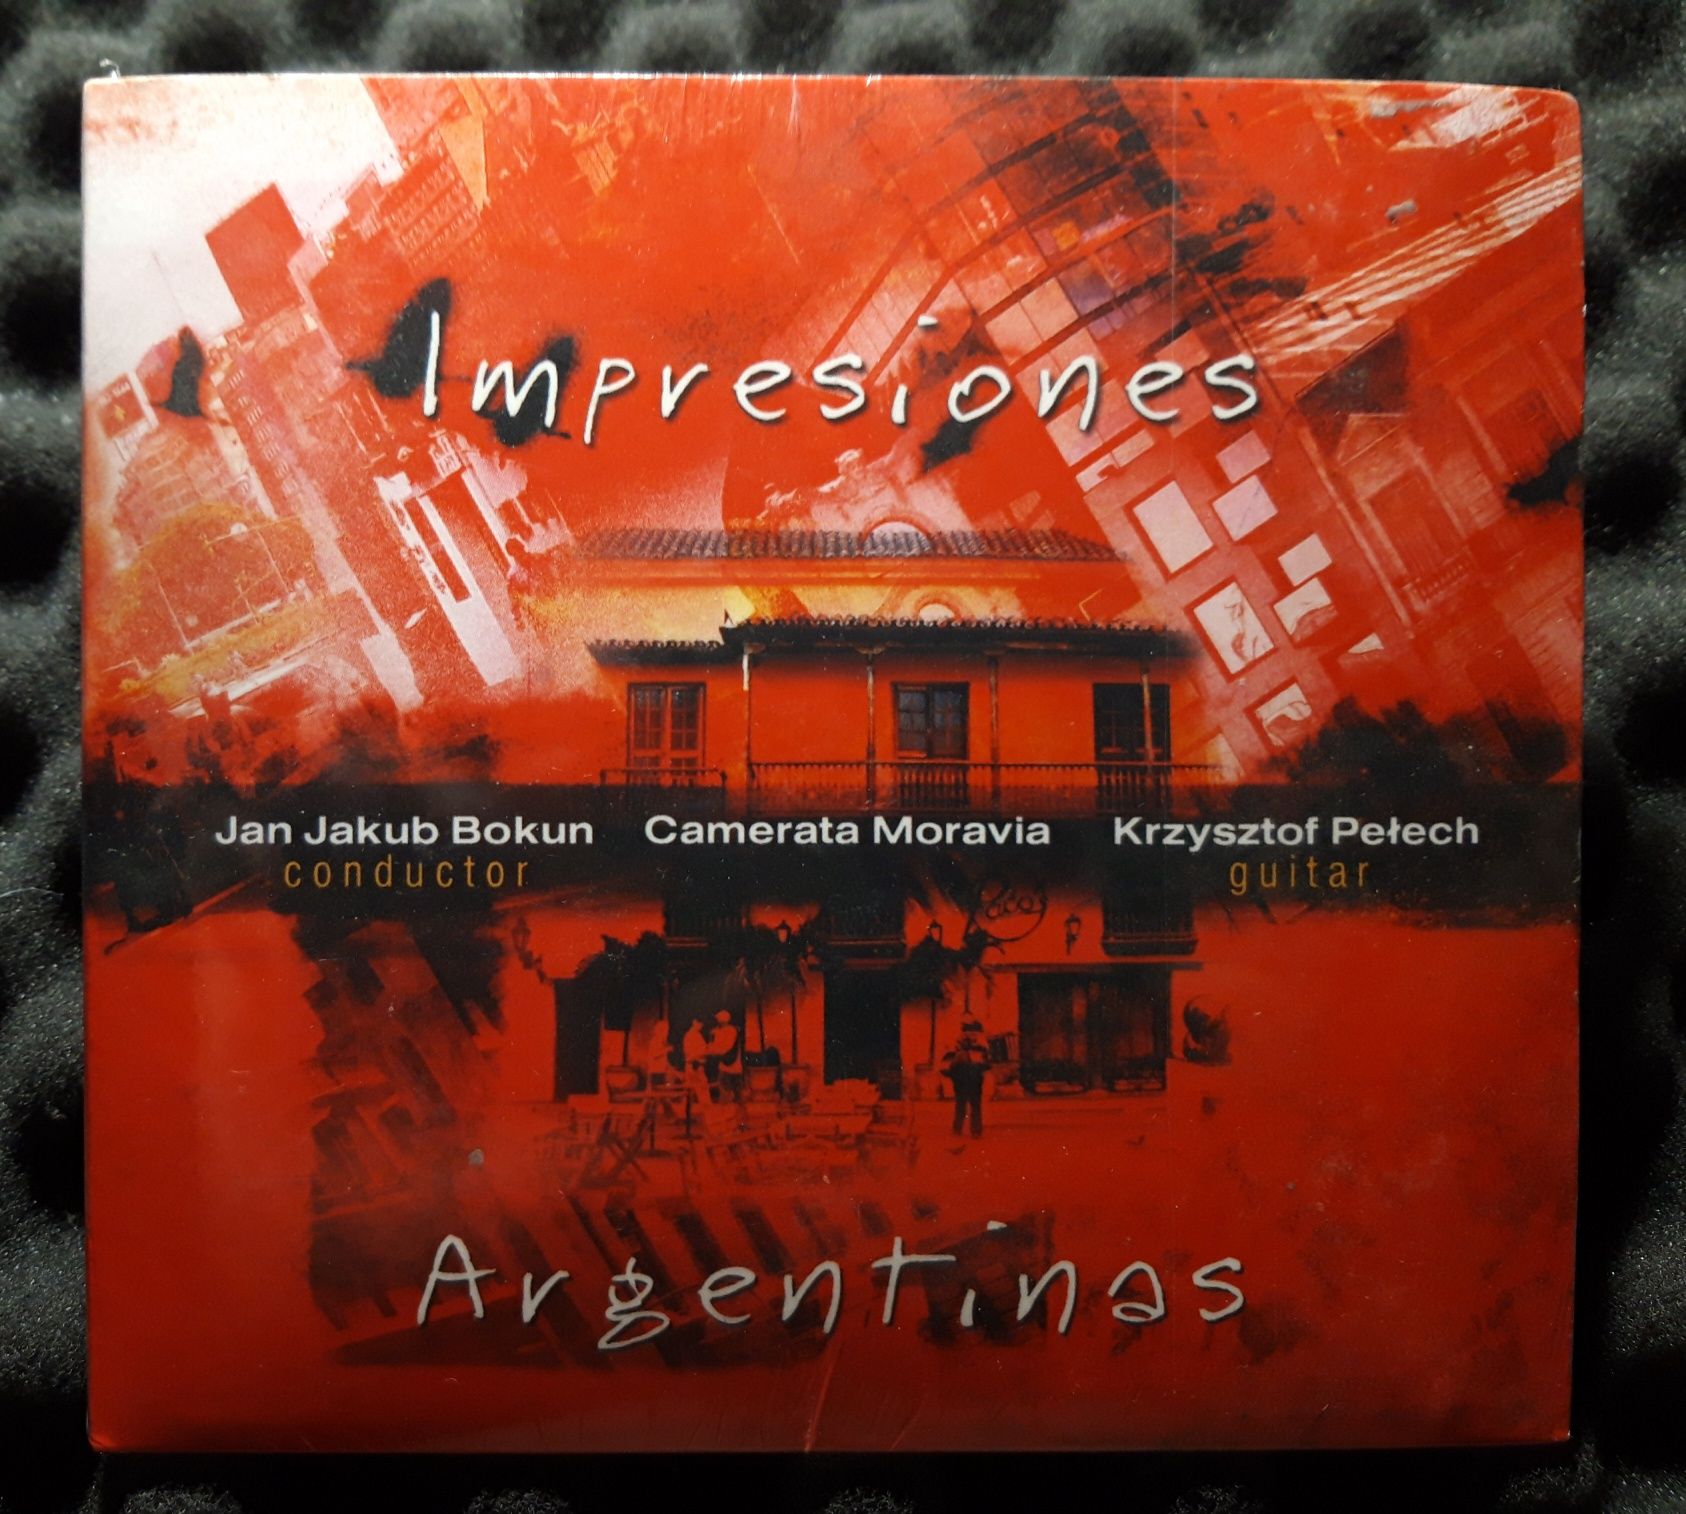 Impresiones Argentinas (CD, 2007, FOLIA)